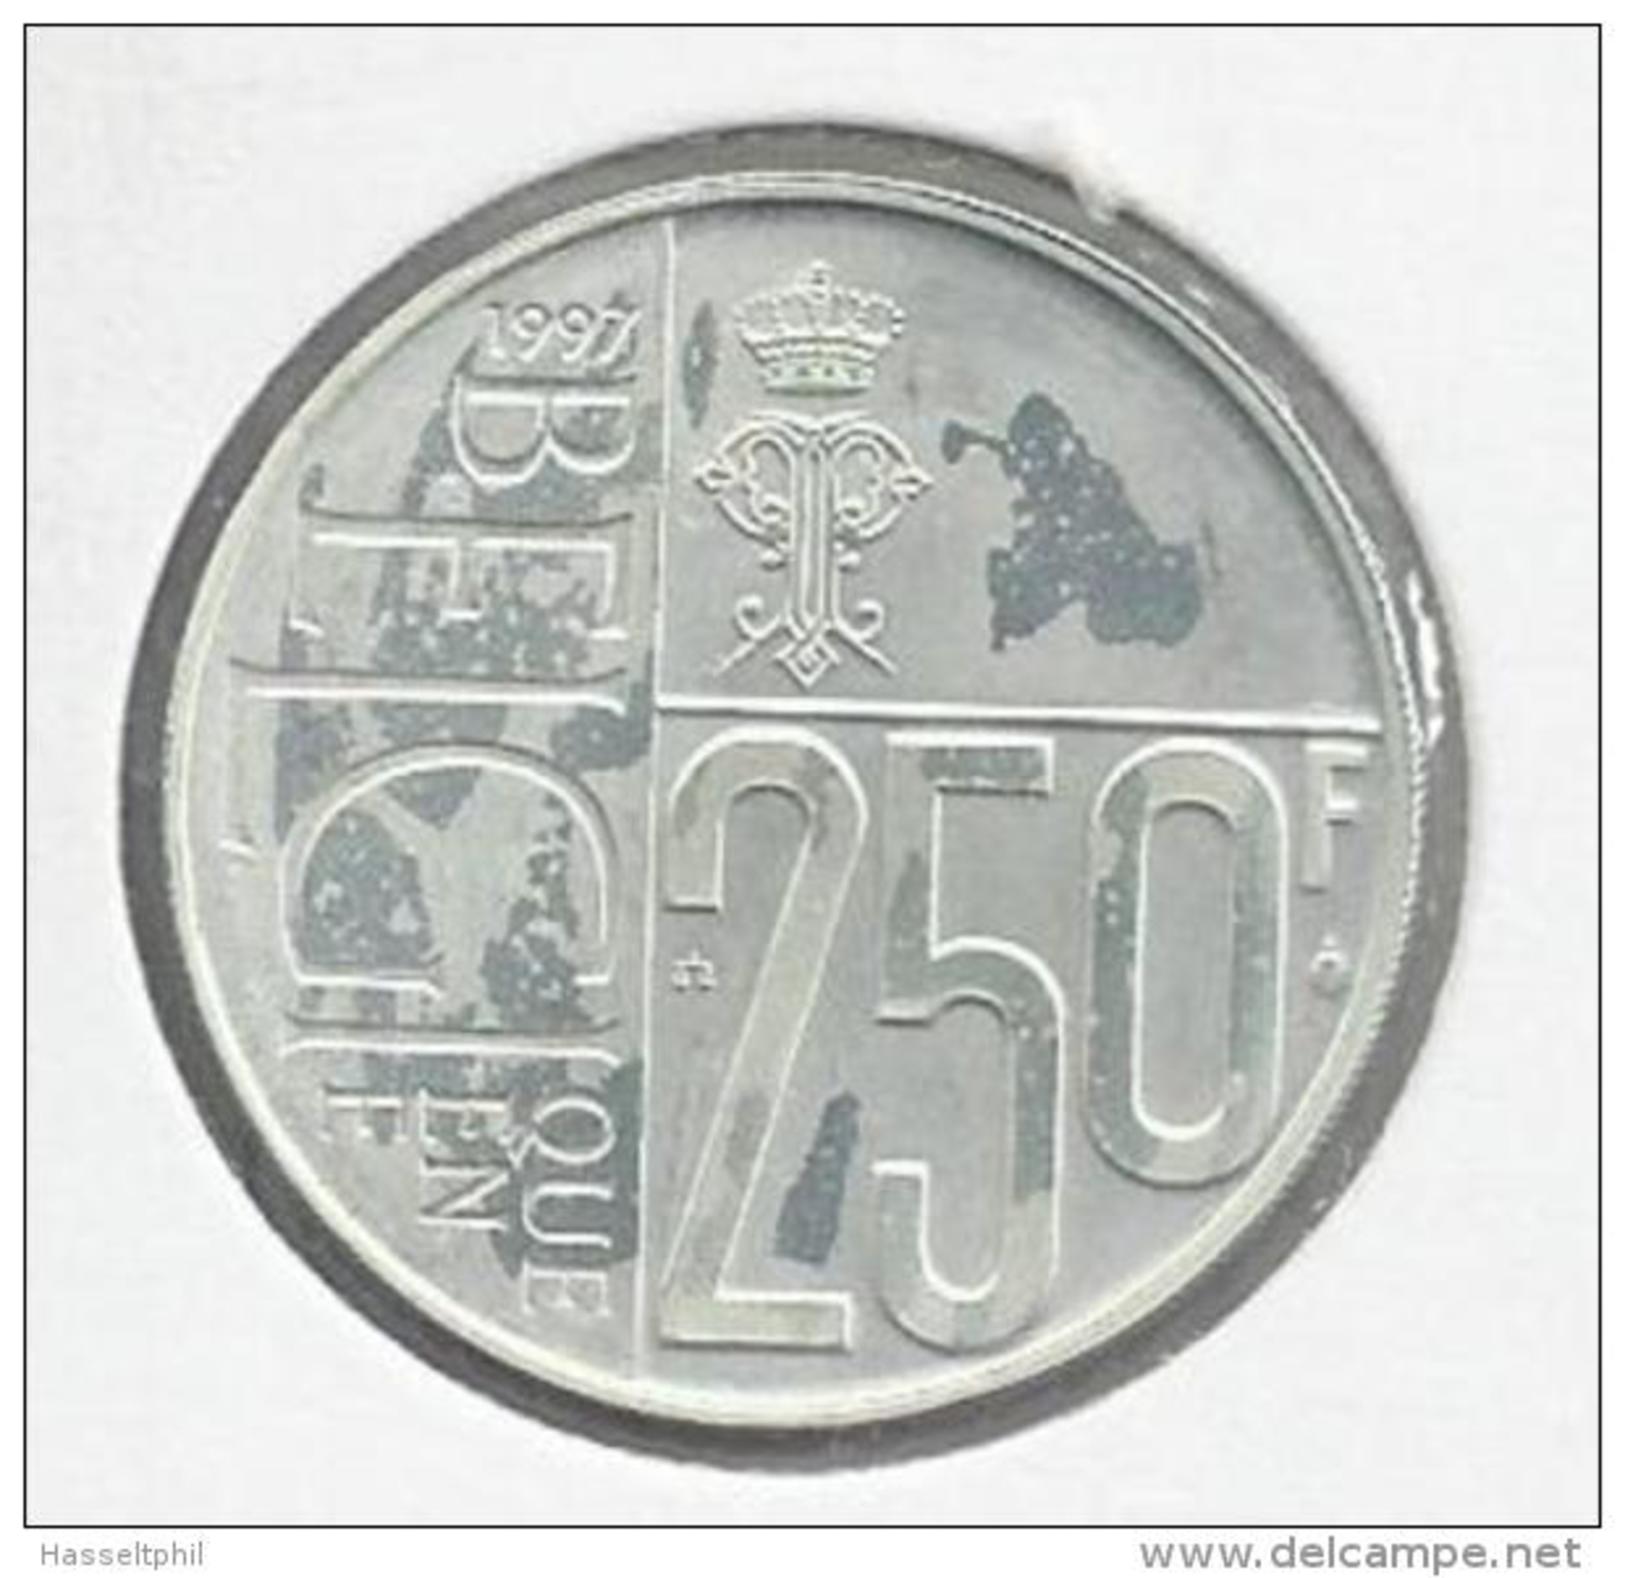 BELGIE - BELGIQUE 250 Frank / 250 Franc Koningin Paola 60 Jaar 1997 - 250 Francs